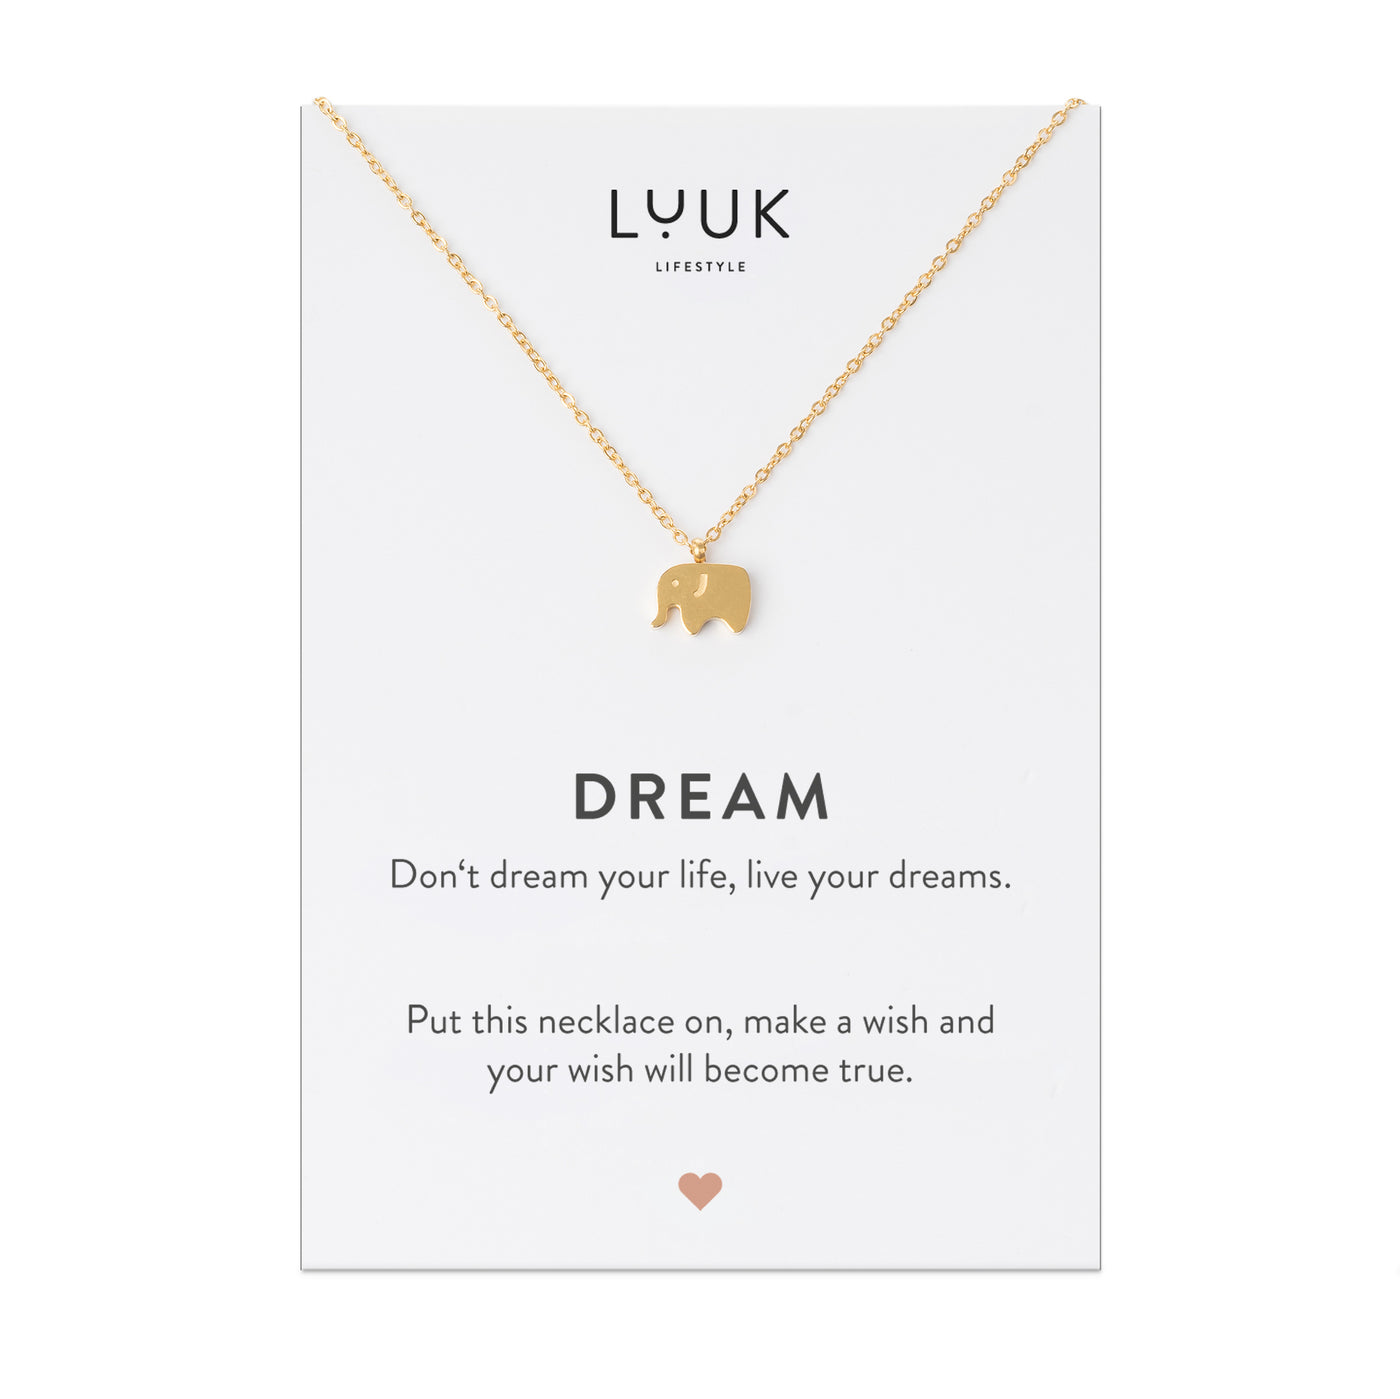 Goldene Halskette mit Elefant Anhänger auf Dream Spruchkarte von der Brand Luuk Lifestyle